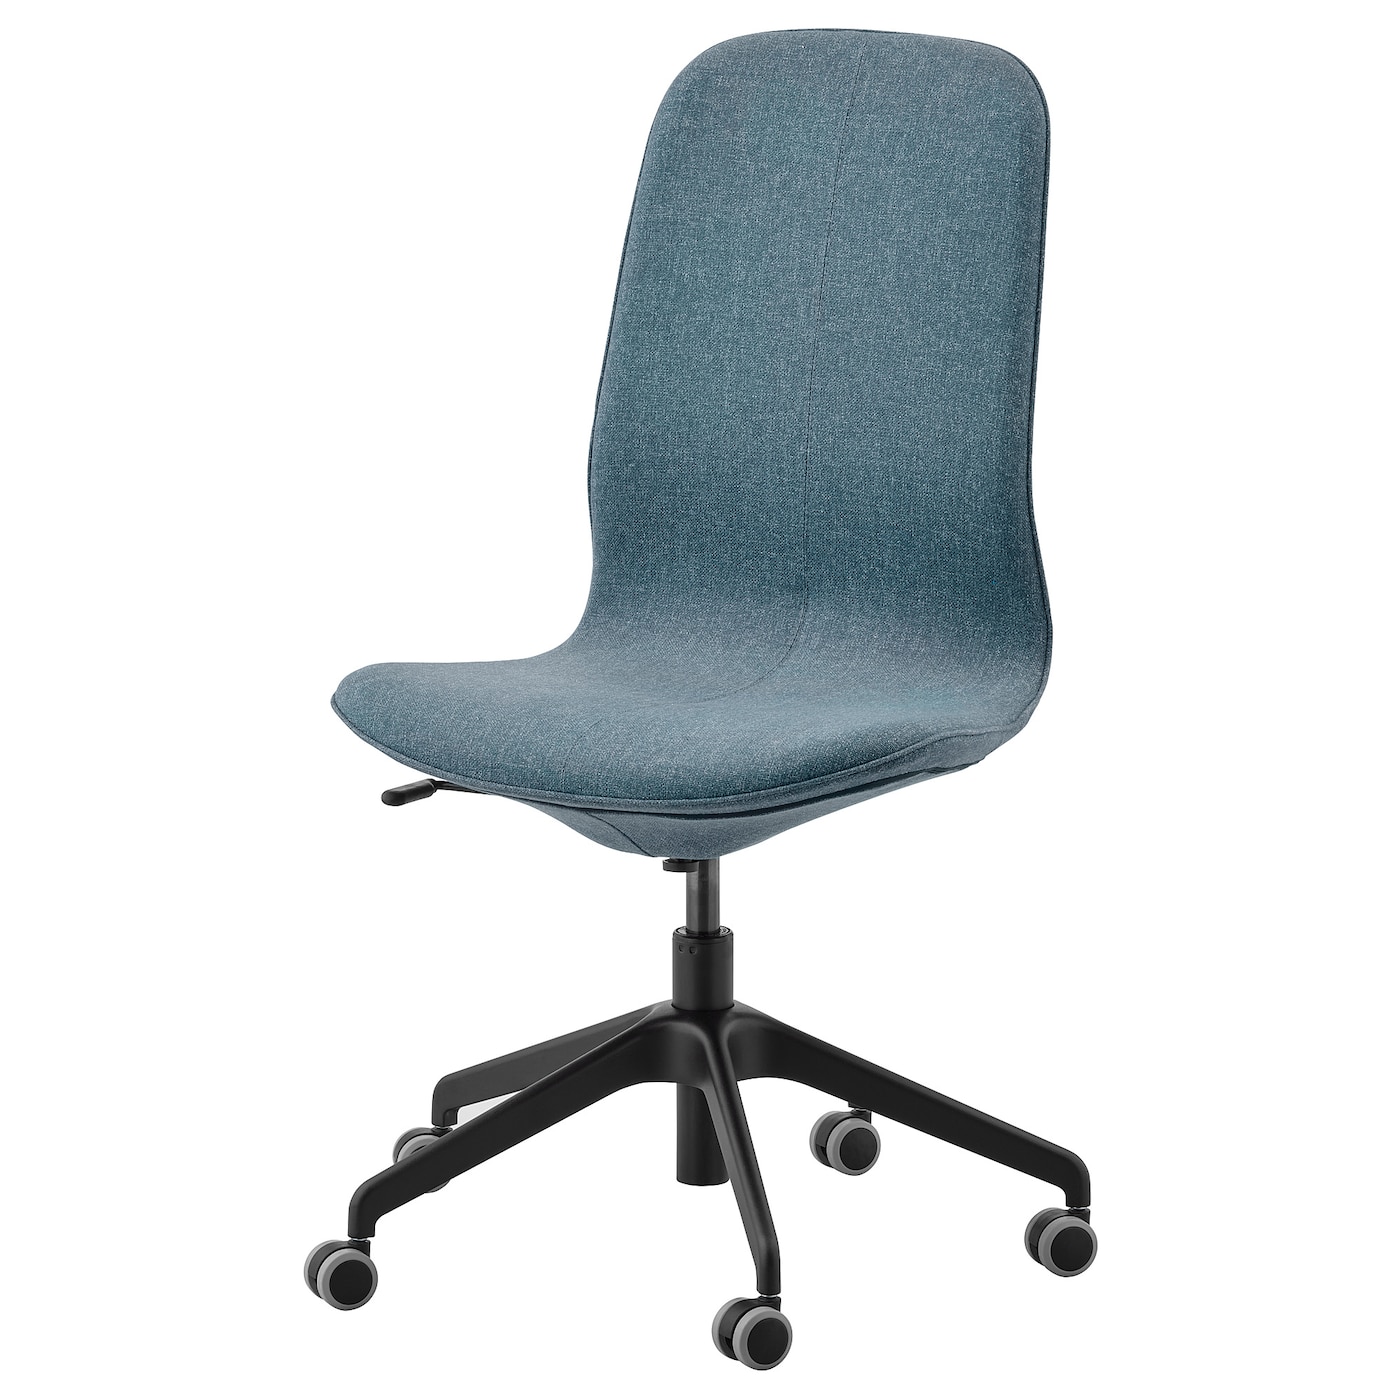 Офисный стул - IKEA LÅNGFJÄLL/LANGFJALL, 68x68x104см, серый/светло-серый, ЛОНГФЬЕЛЛЬ ИКЕА